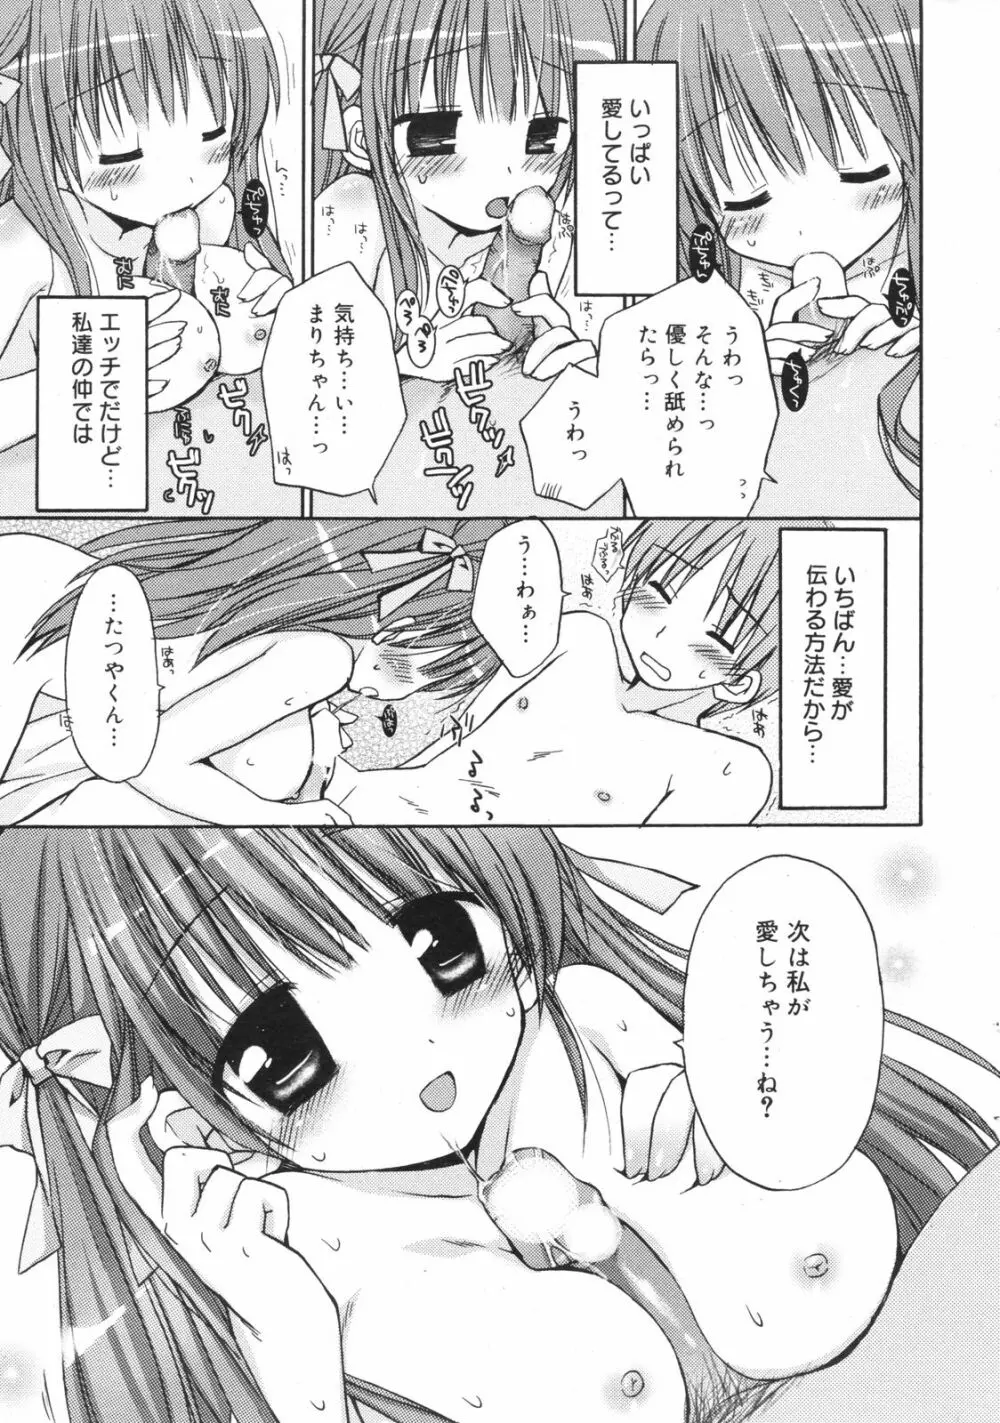 Manga Bangaichi 2008-11 13ページ